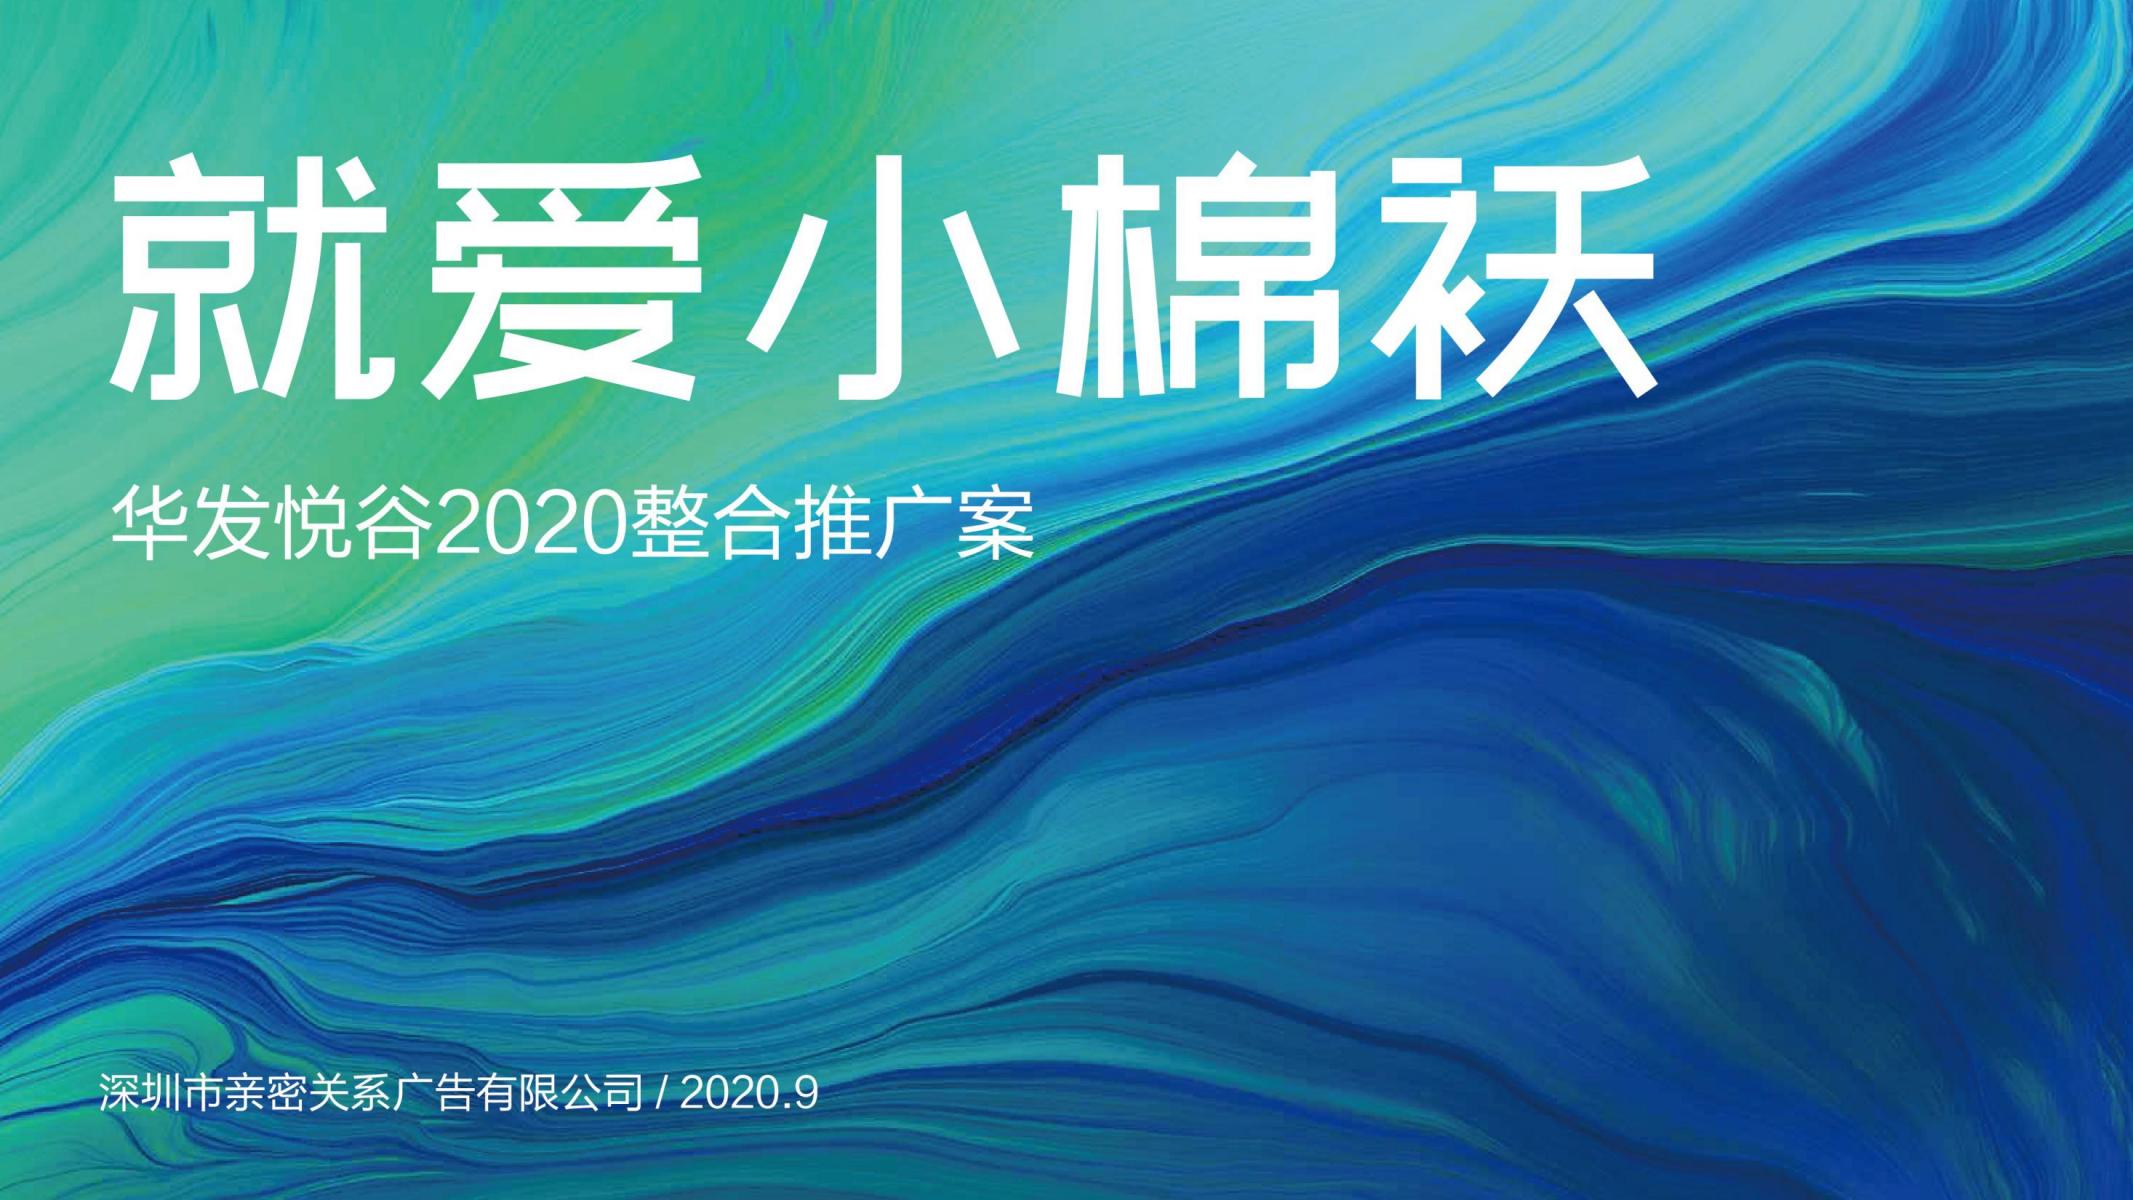 亲密关系202009华发悦谷提报打印版_00.jpg